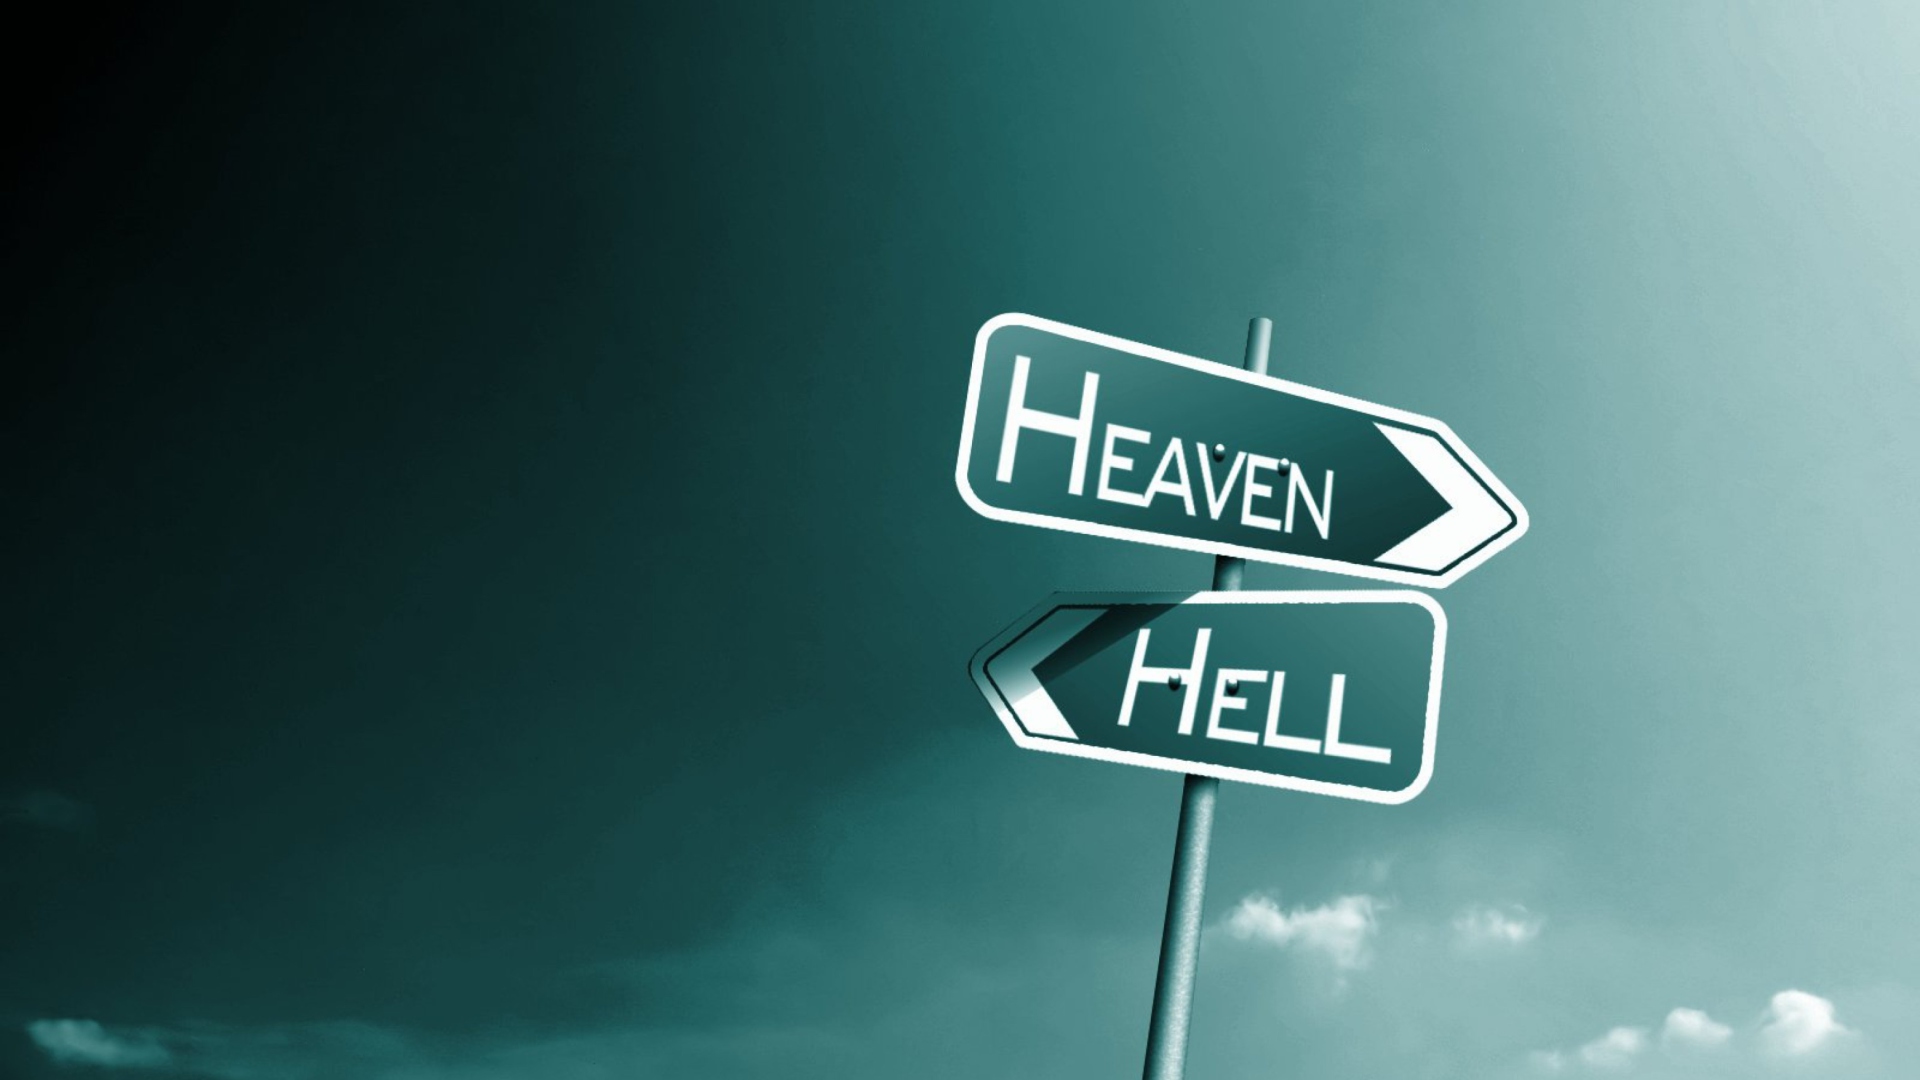 Das Heaven Hell Wallpaper 1920x1080